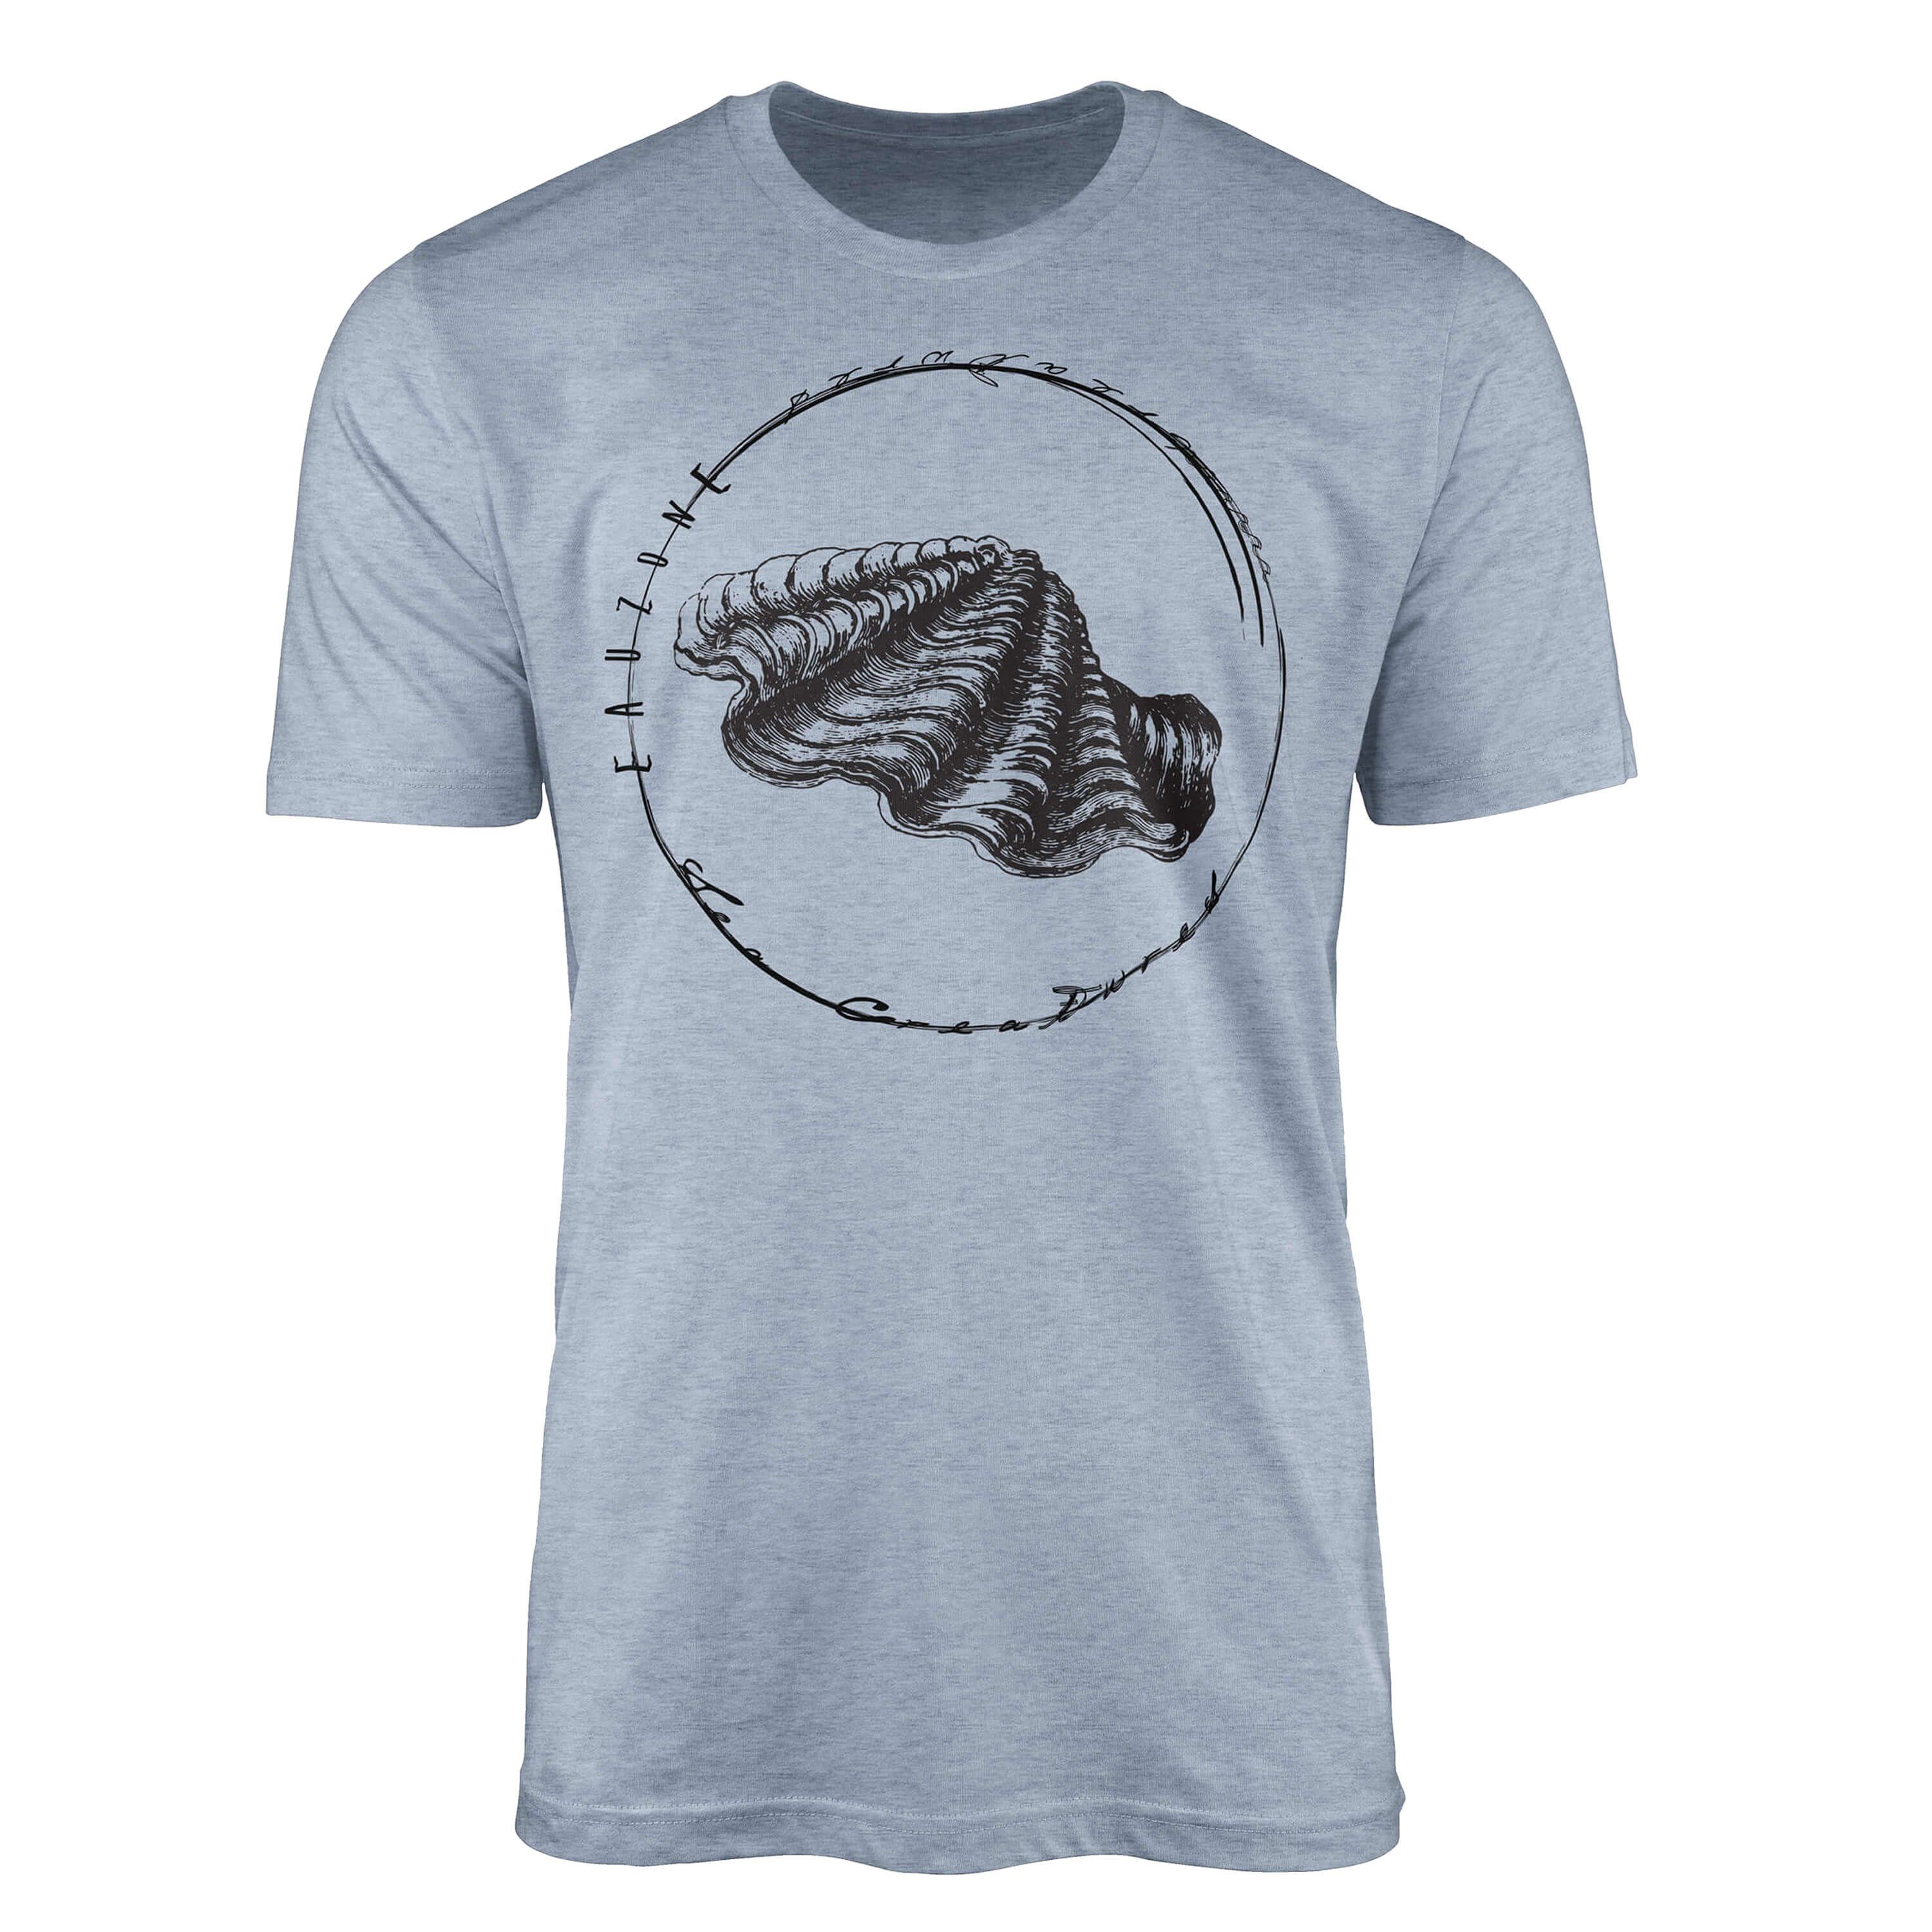 Tiefsee - Fische T-Shirt / Schnitt Struktur T-Shirt 088 und Sinus sportlicher Denim Stonewash feine Serie: Art Sea Sea Creatures,